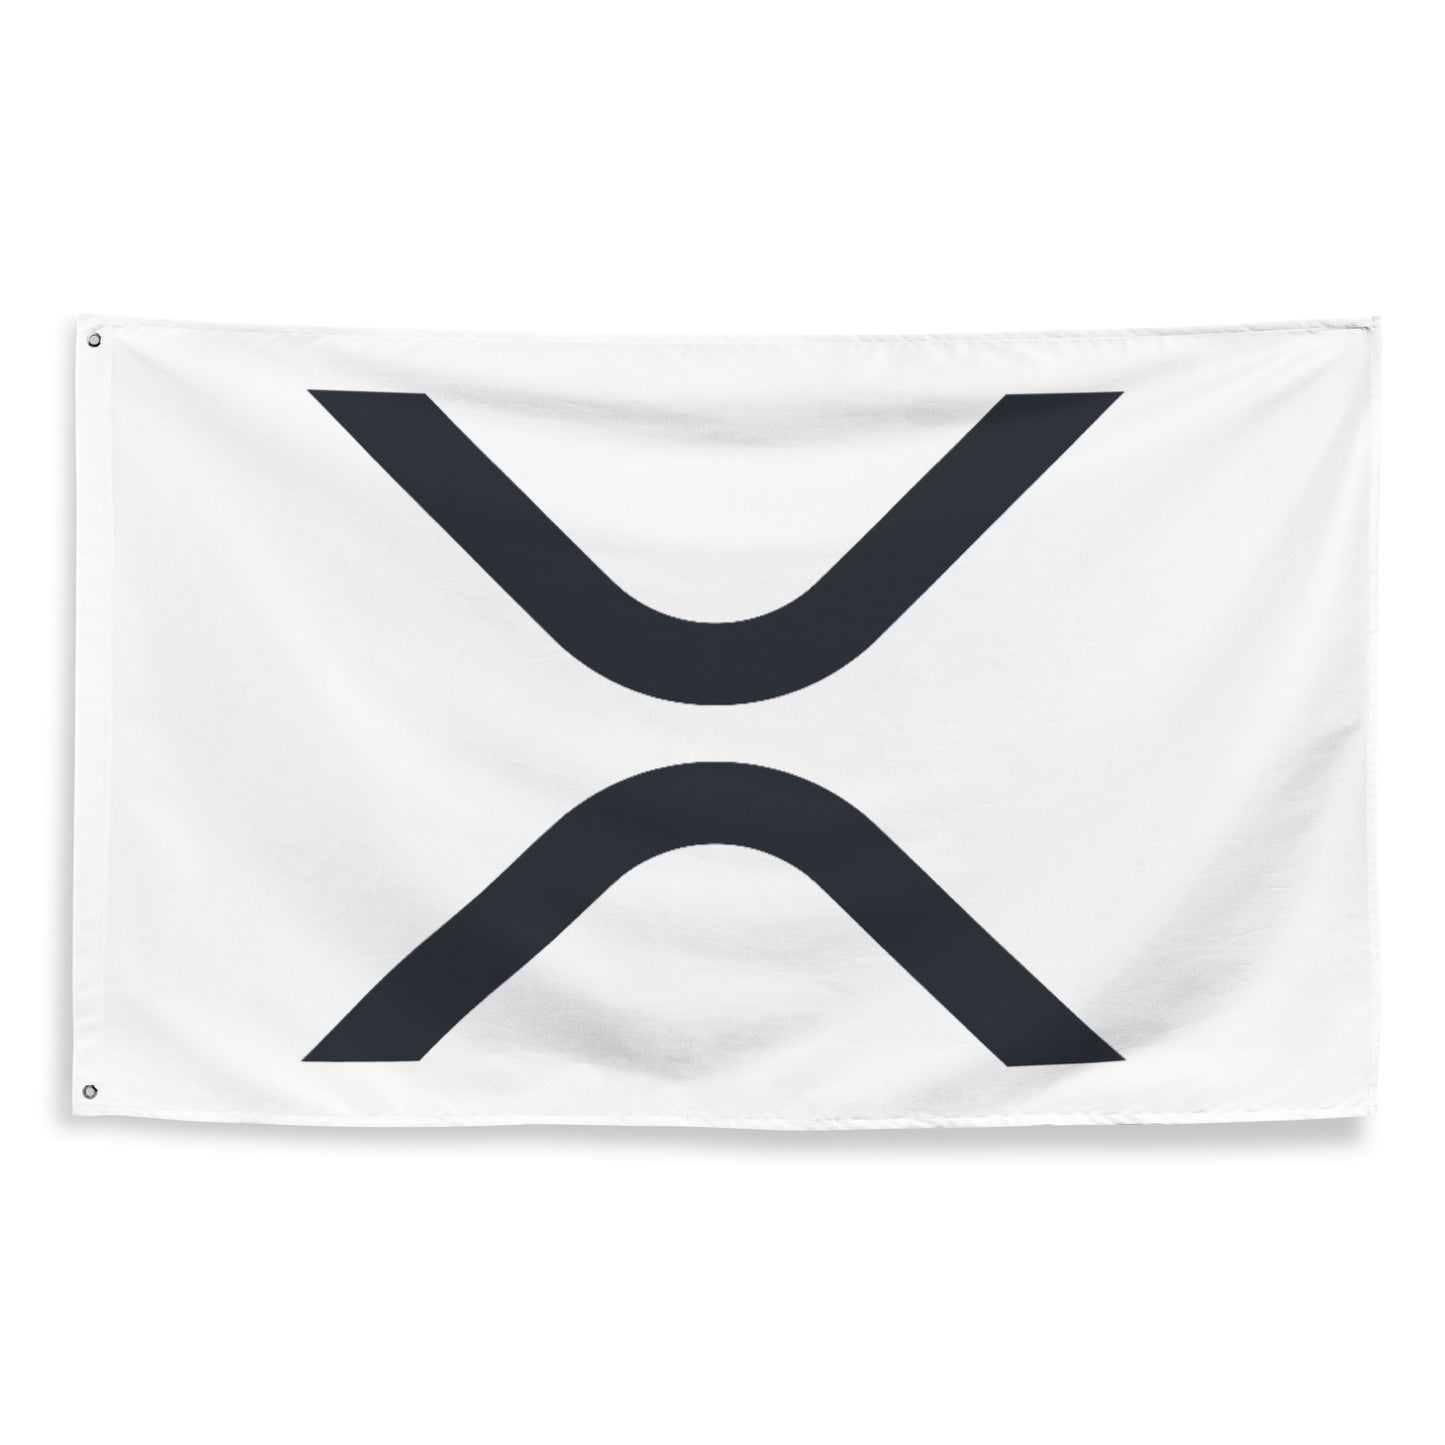 RIPPLE (XRP) LOGO FLAG (V3)